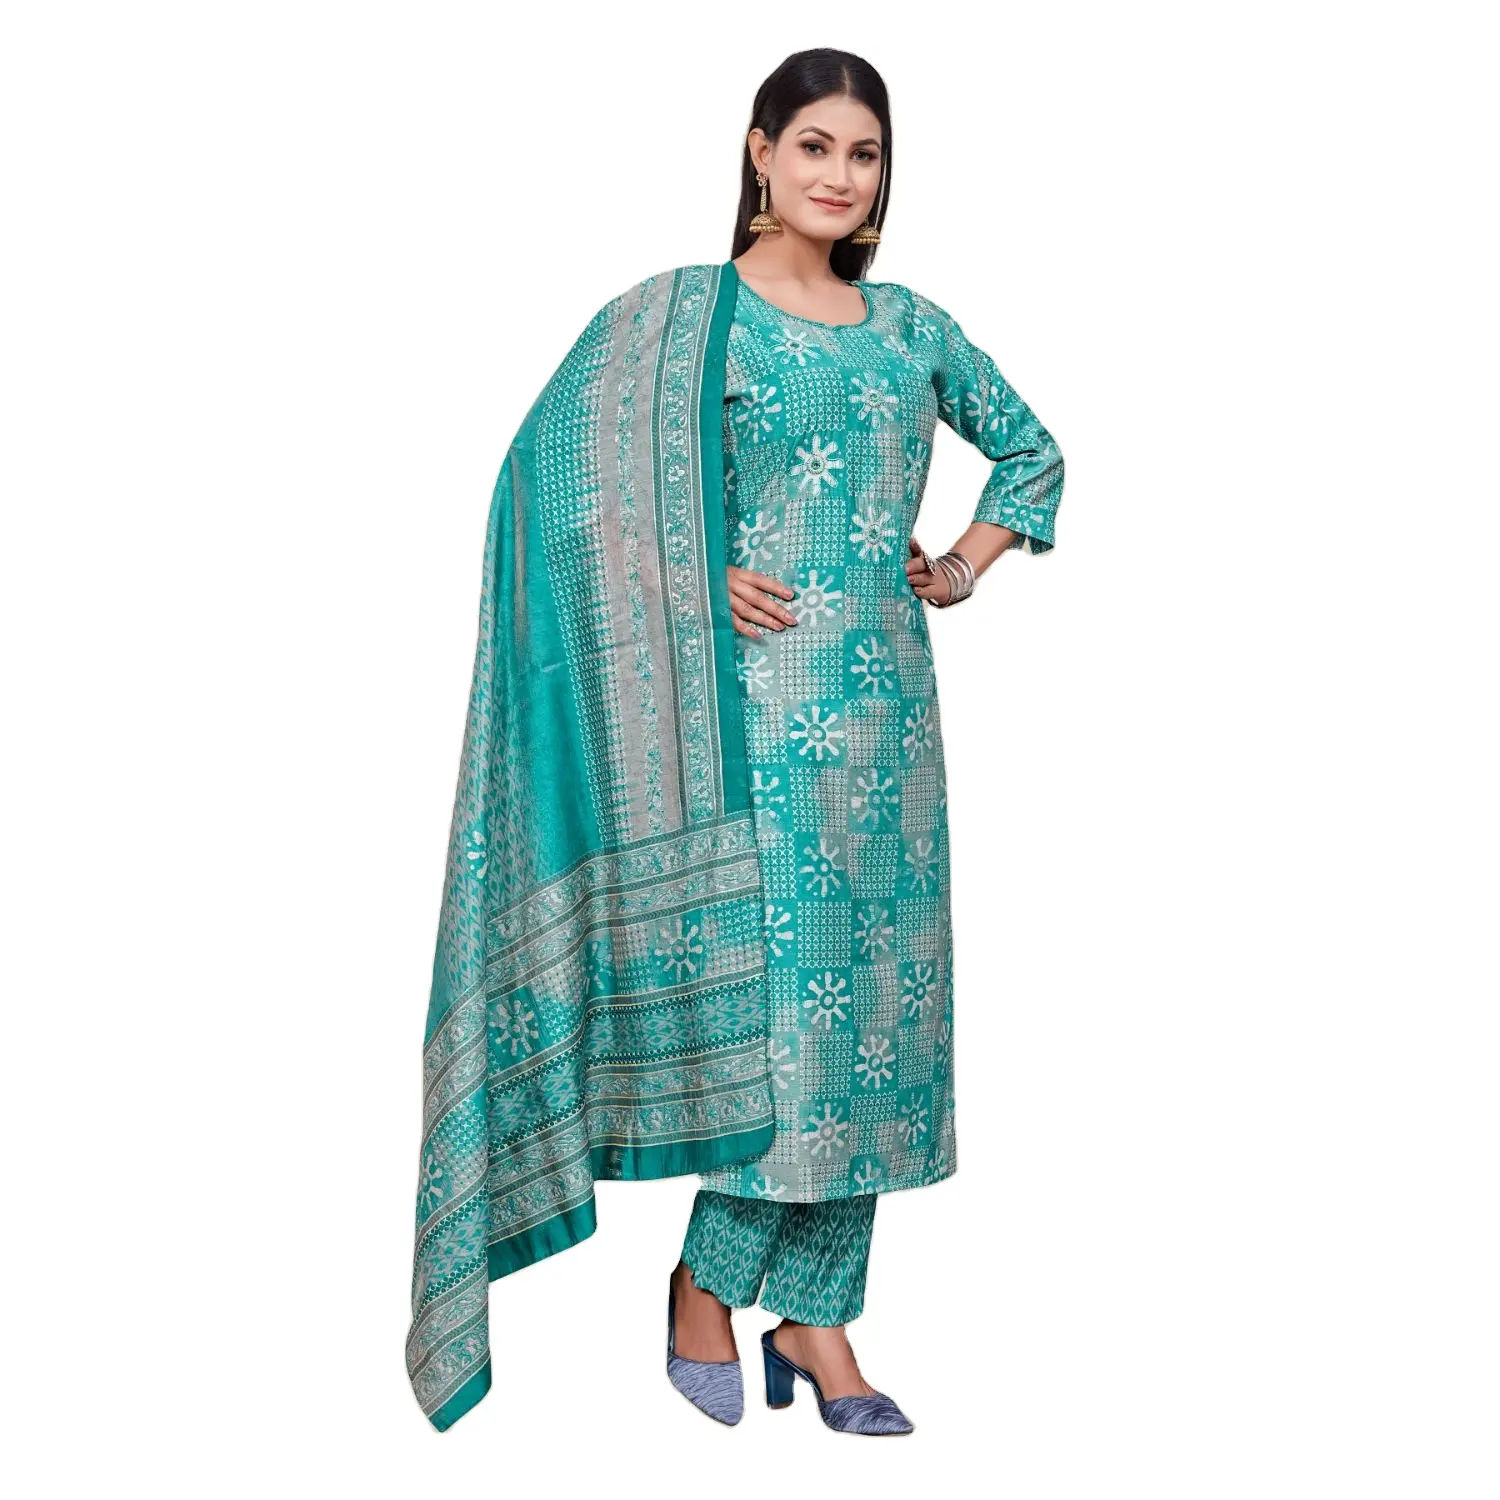 Abbigliamento donna Chanderi Cotton Kurti Pant Set per abbigliamento etnico disponibile a prezzo all'ingrosso dall'india